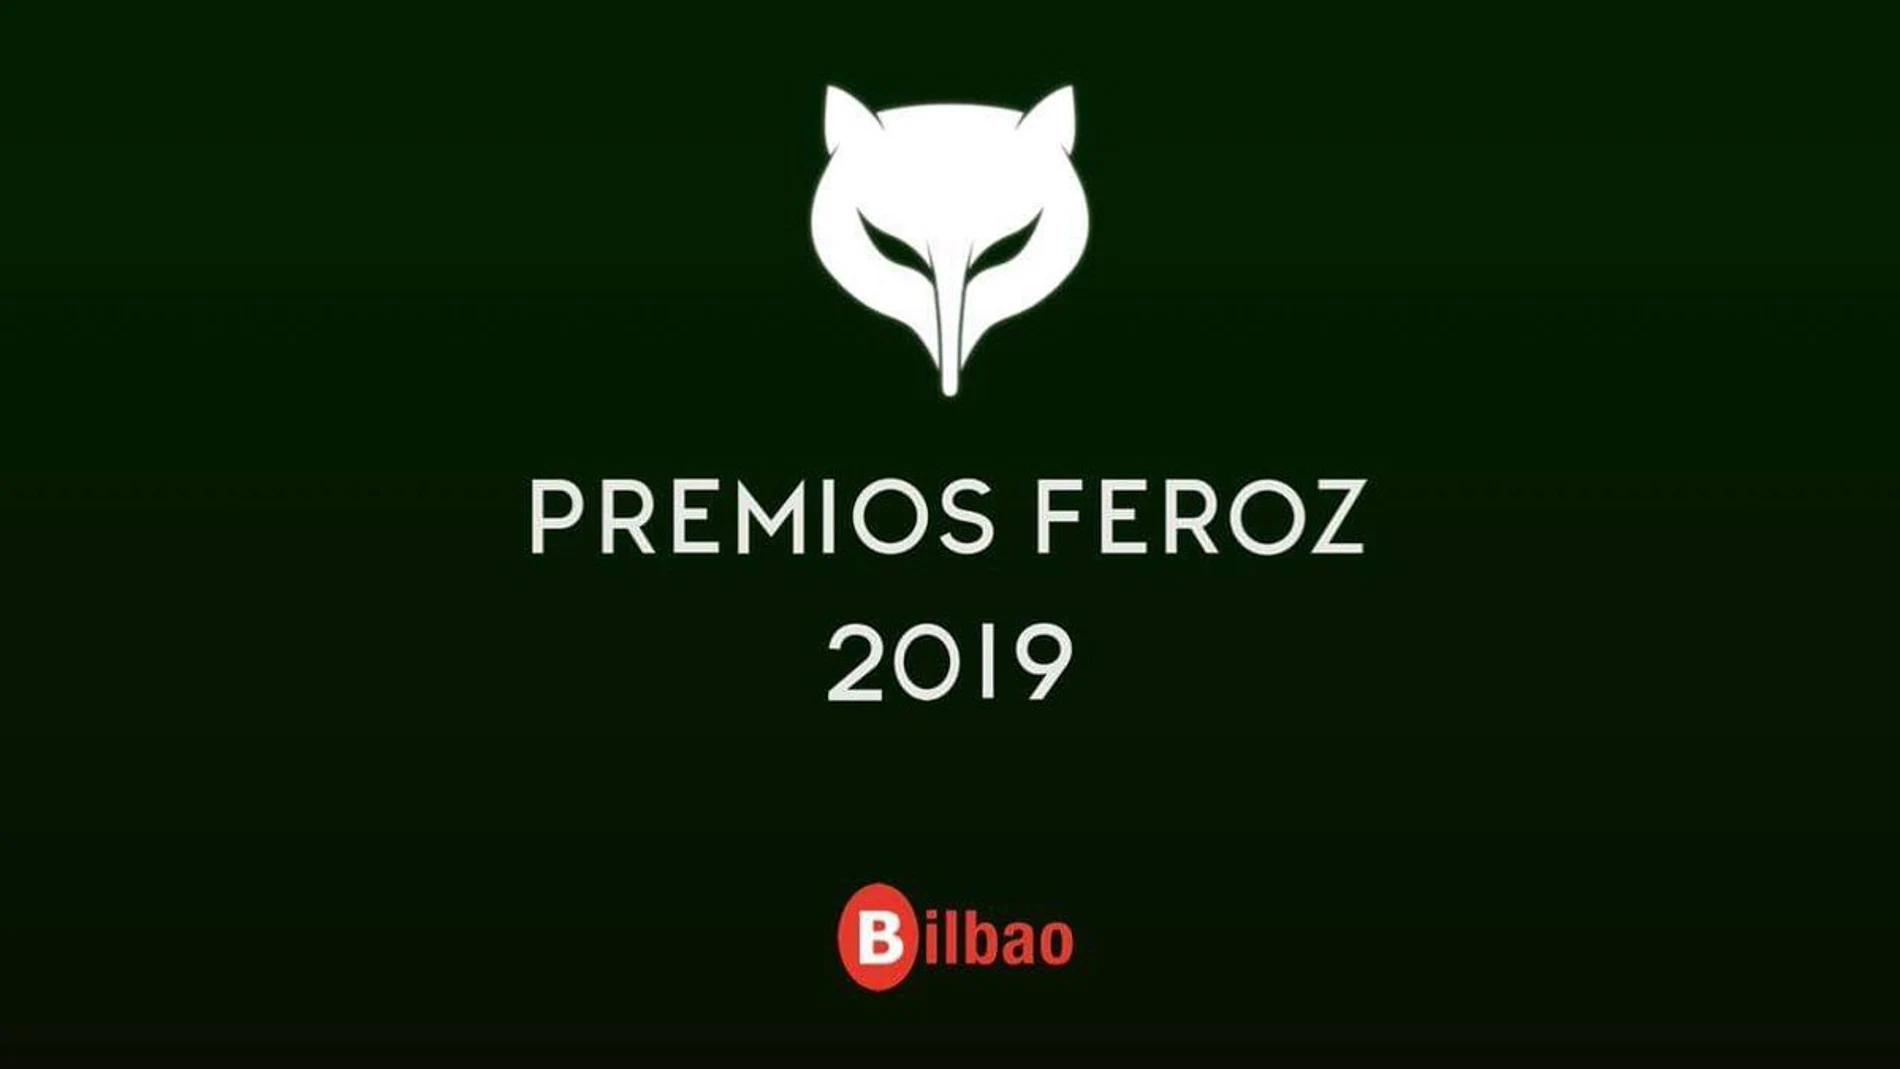 La gala de entrega de la sexta edición de los Premios Feroz se celebrará en Bilbao el próximo 19 de enero